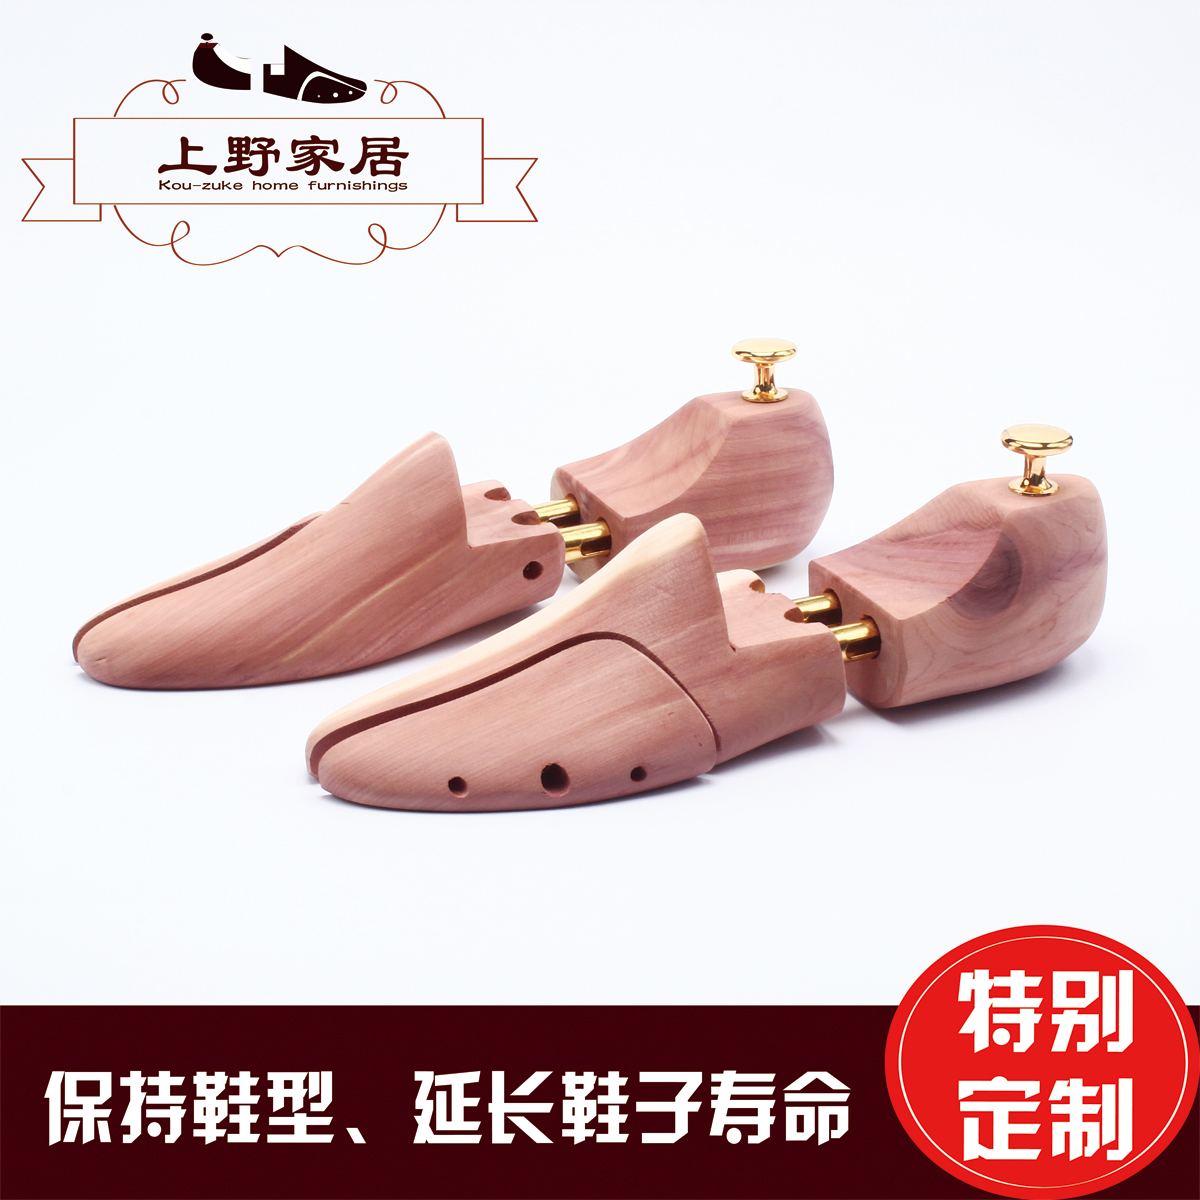 【上野】雪松木鞋撑香木实木鞋楦保持鞋型吸收湿气马臀皮护理